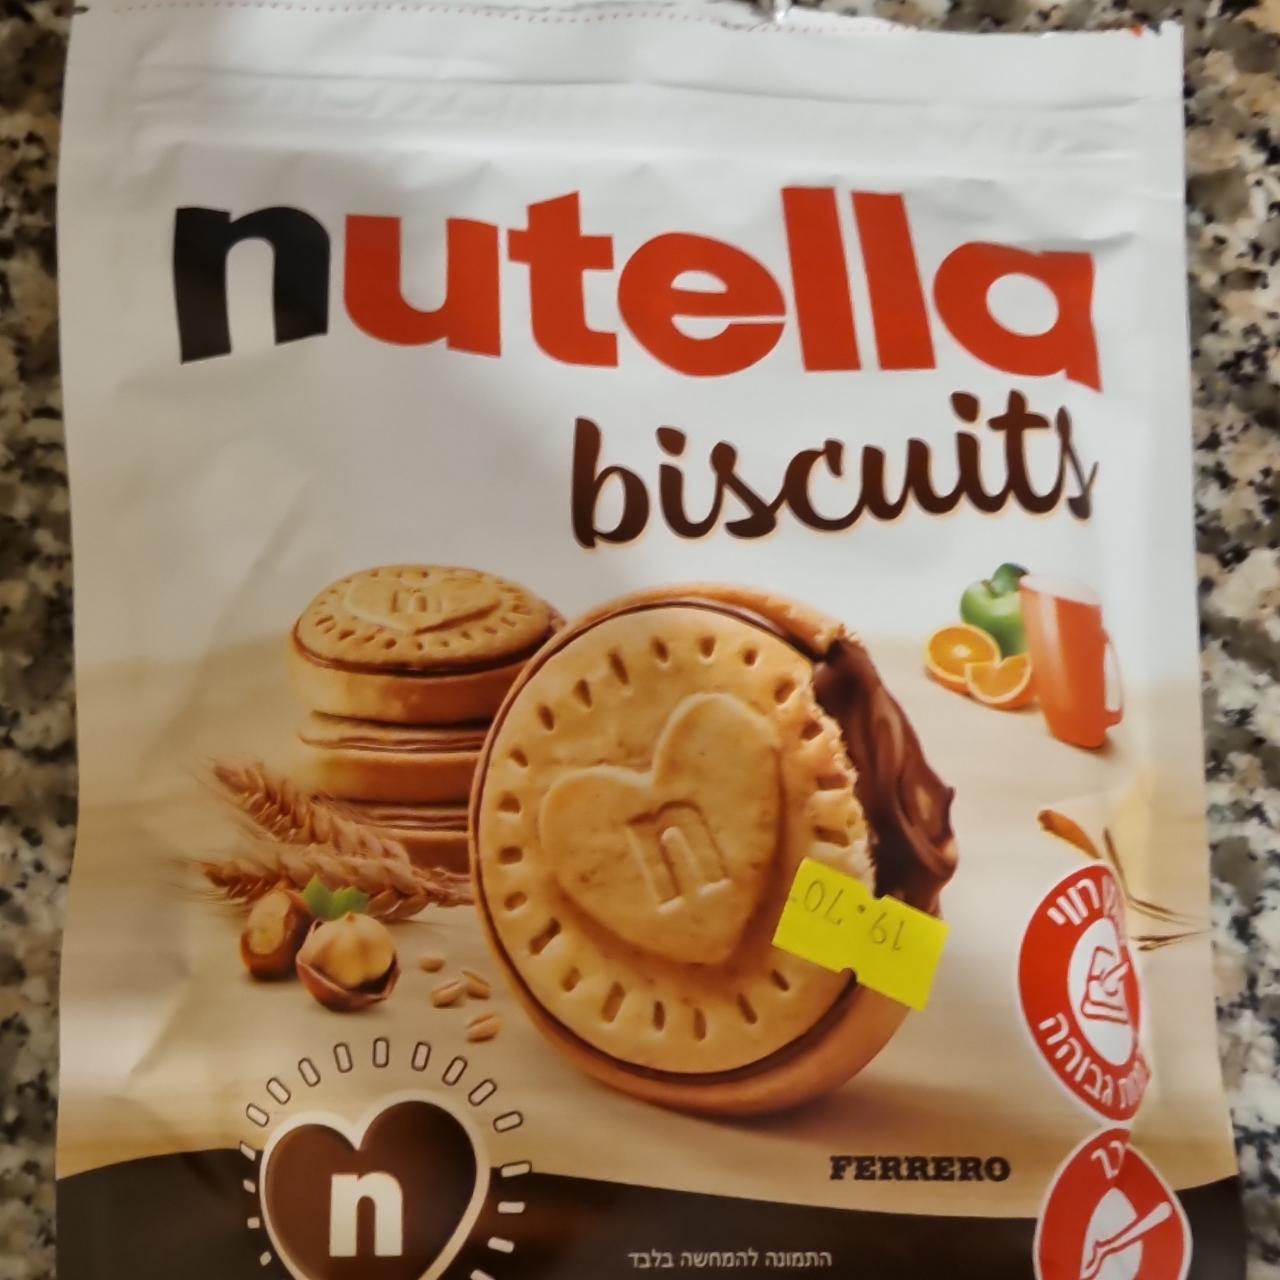 Фото - Печенье с нутеллой Nutella Biscuits Ferrero